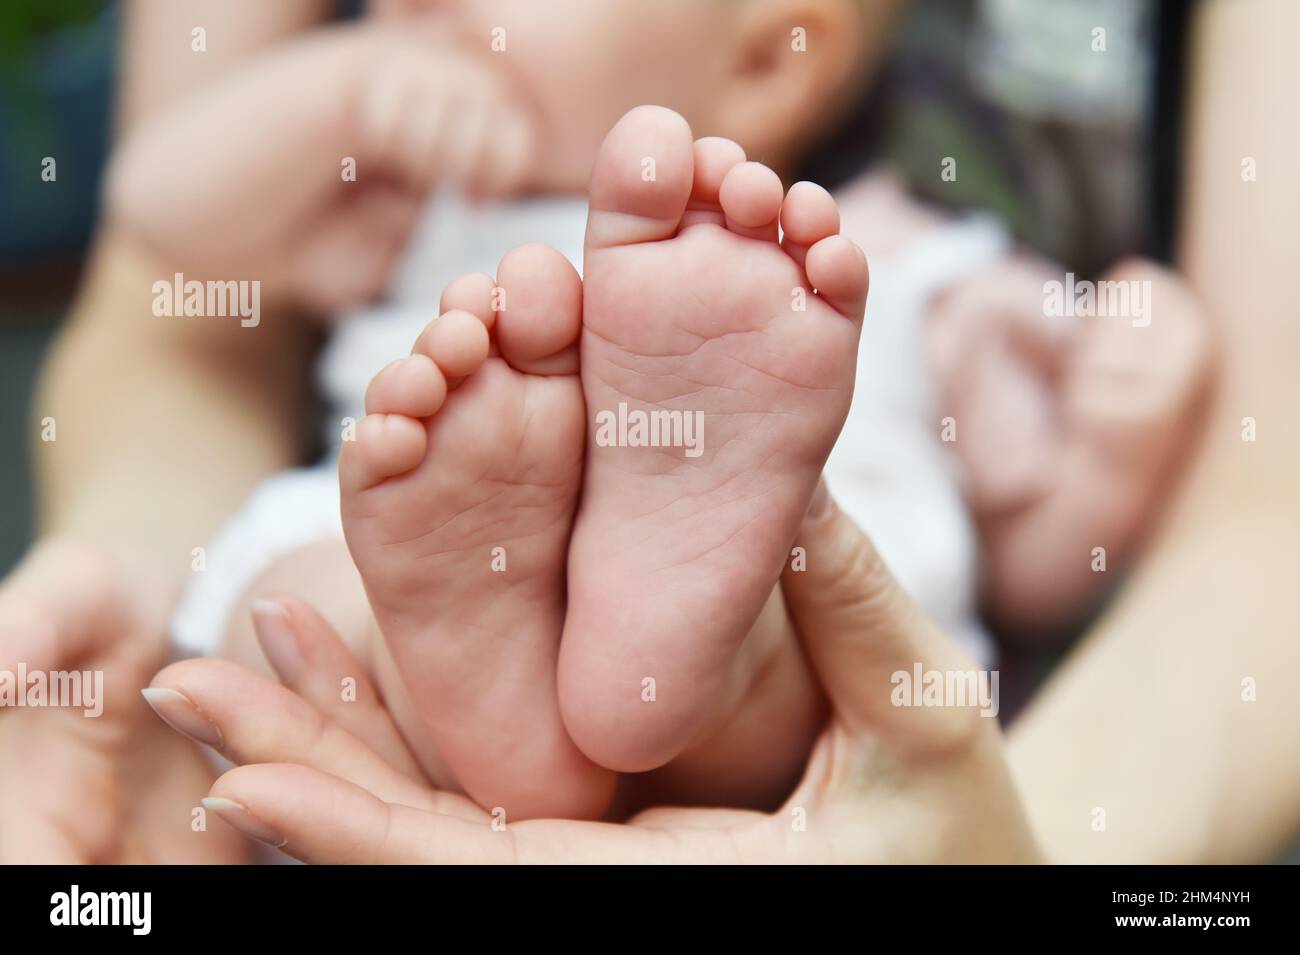 Baby Feet, un parent tient ses pieds de bébé nouveau-né dans sa main. Banque D'Images